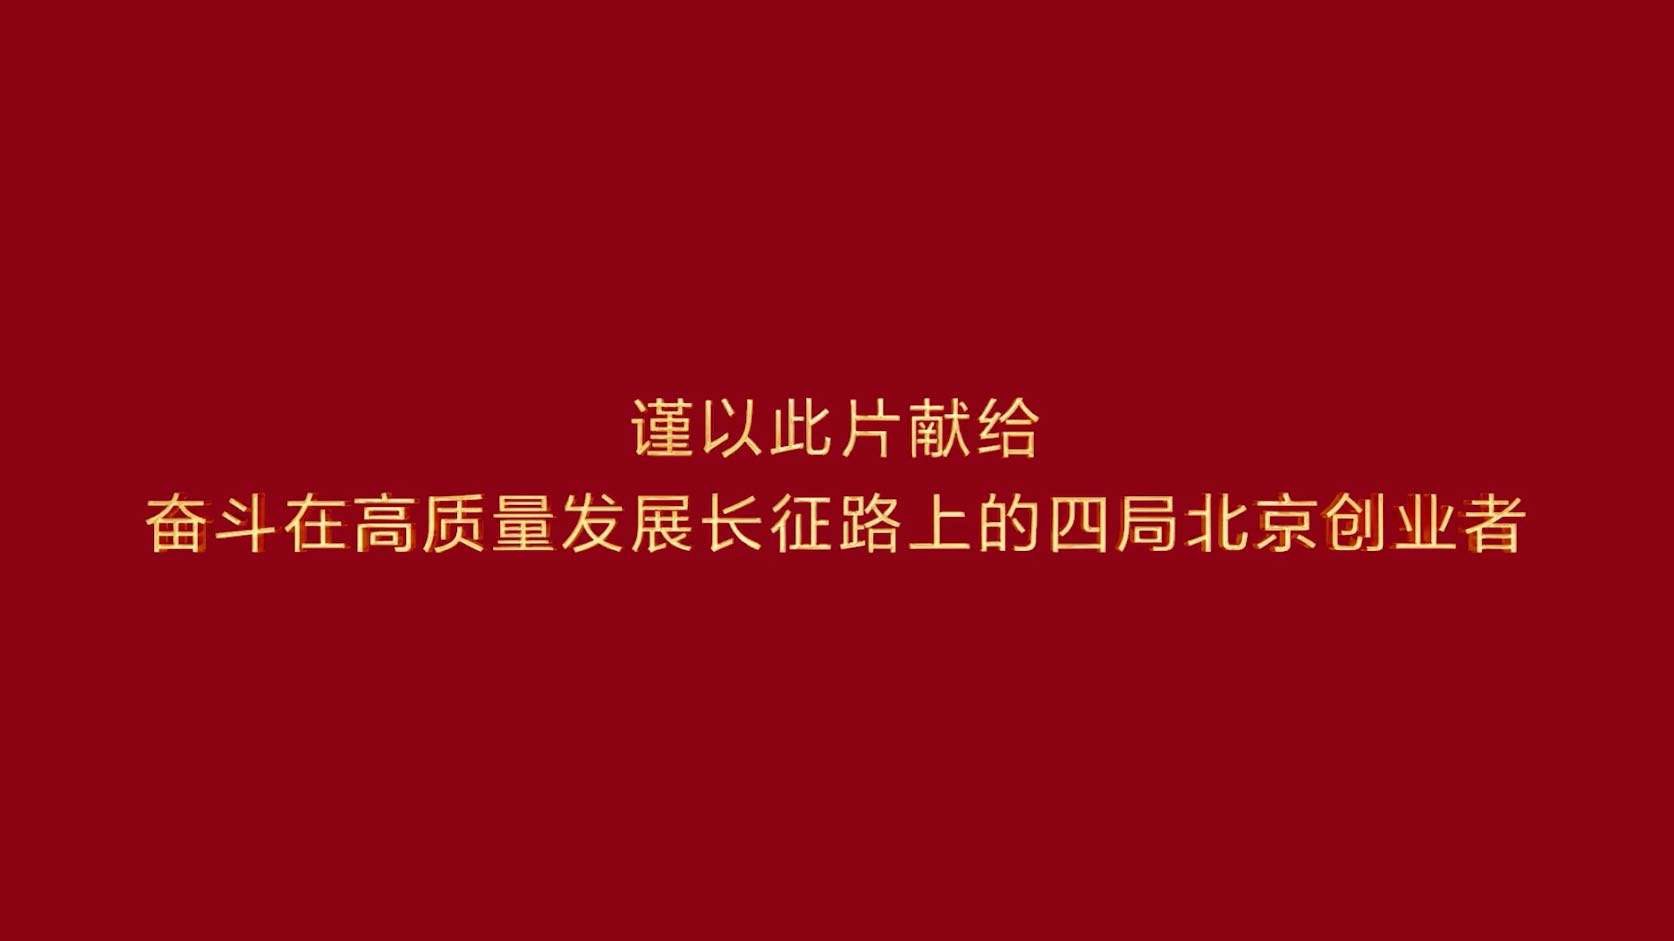 中建四局北京公司党建品牌宣传片-红耀北方